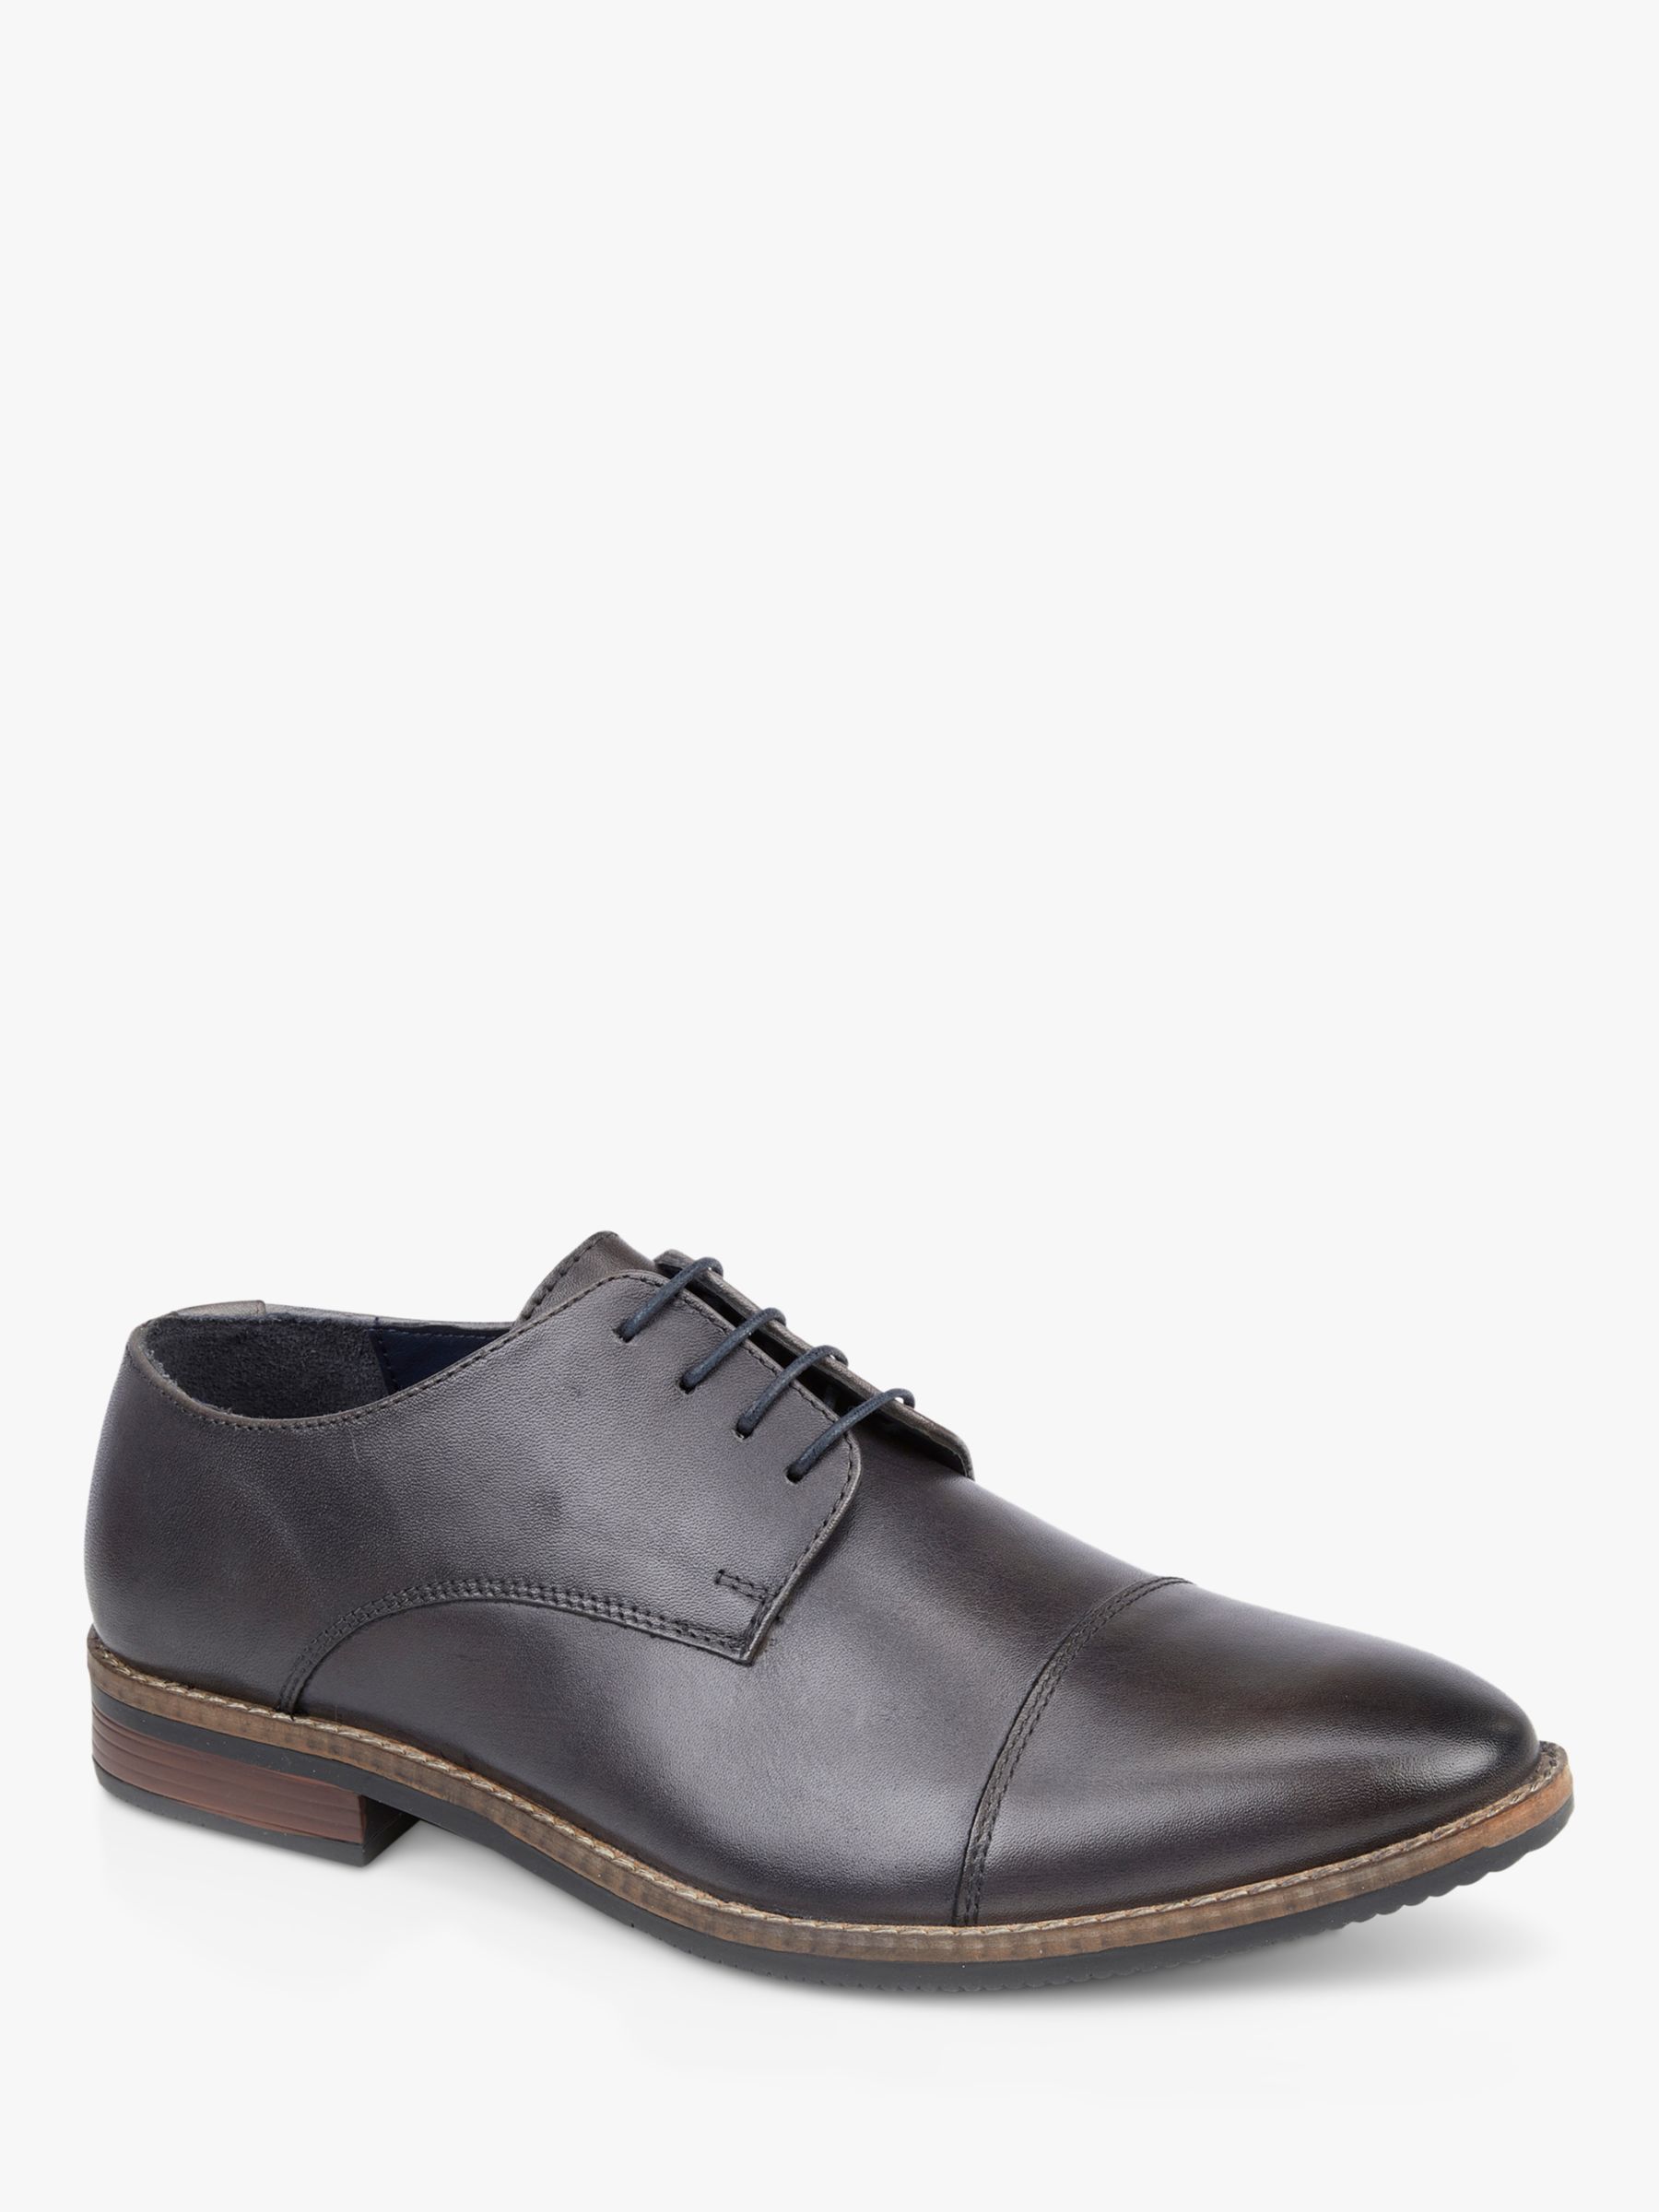 Silver Street London Rufus Derby Shoes, Grey, 7